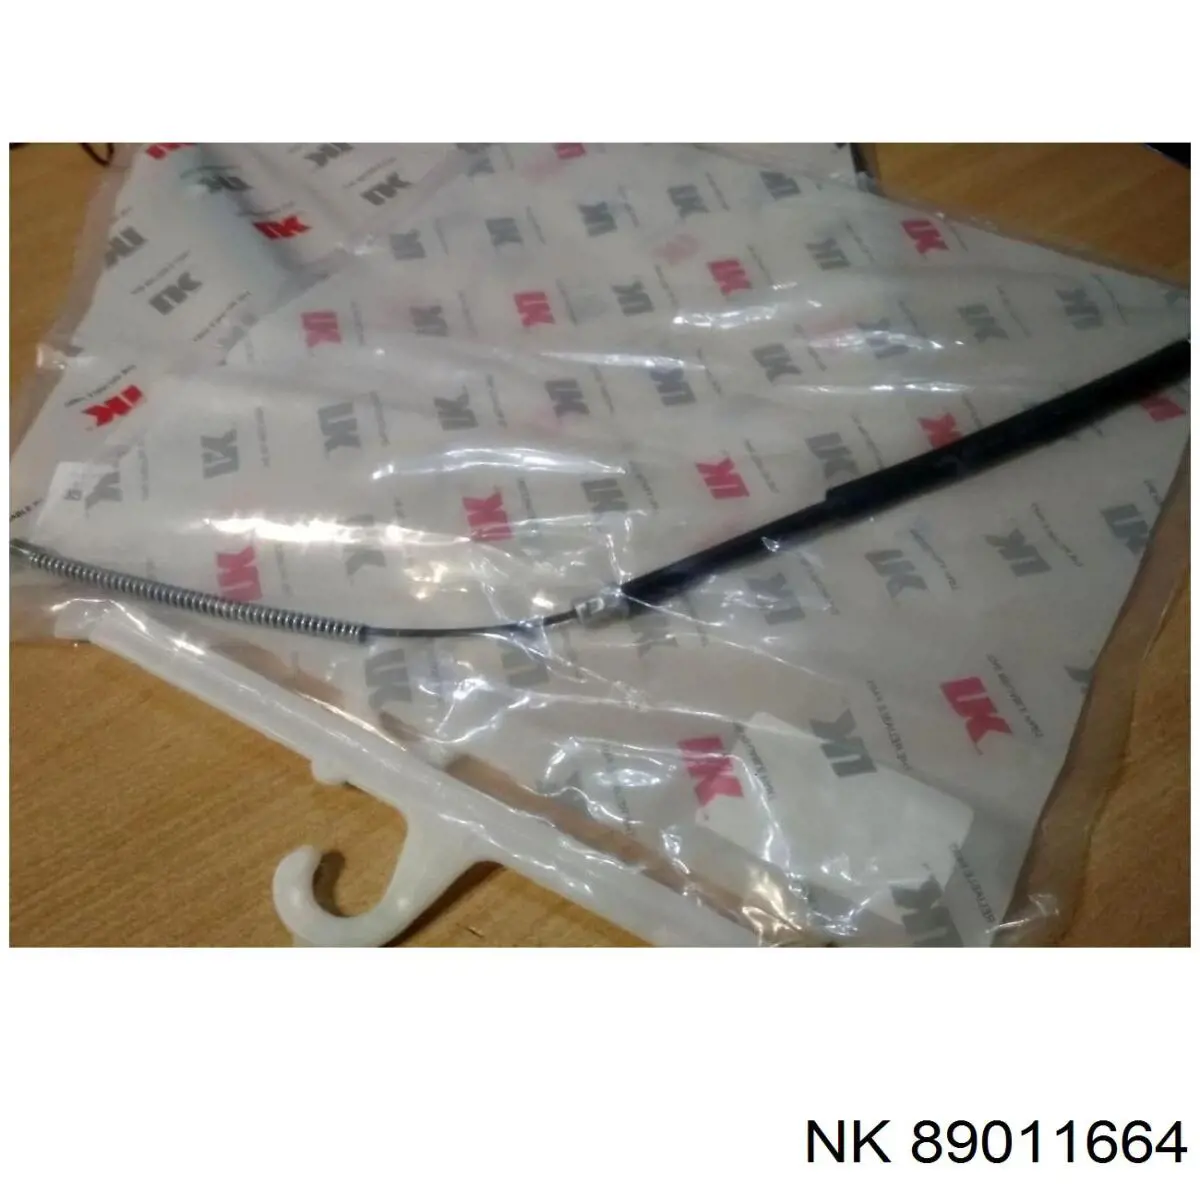 89011664 NK tornillo (tuerca de sujeción)